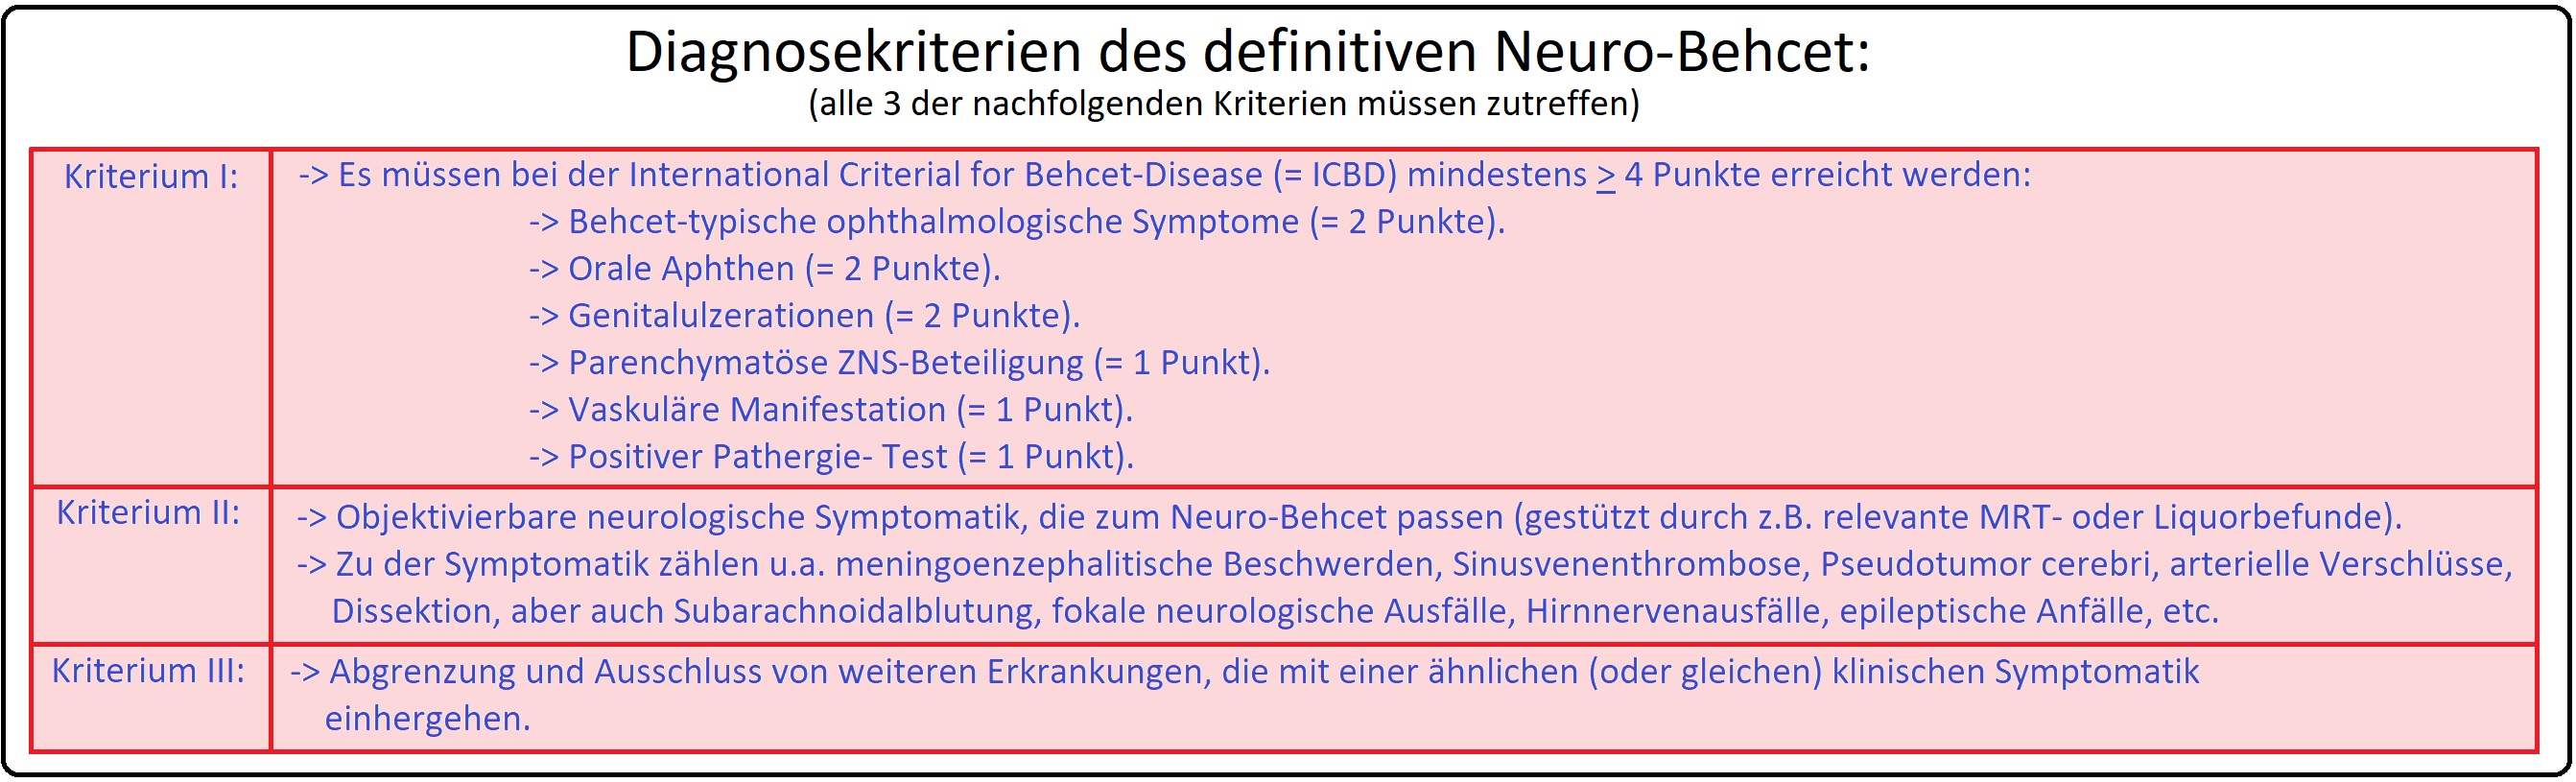 072 Diagnosekriterien des definitiven Neuro Behcet